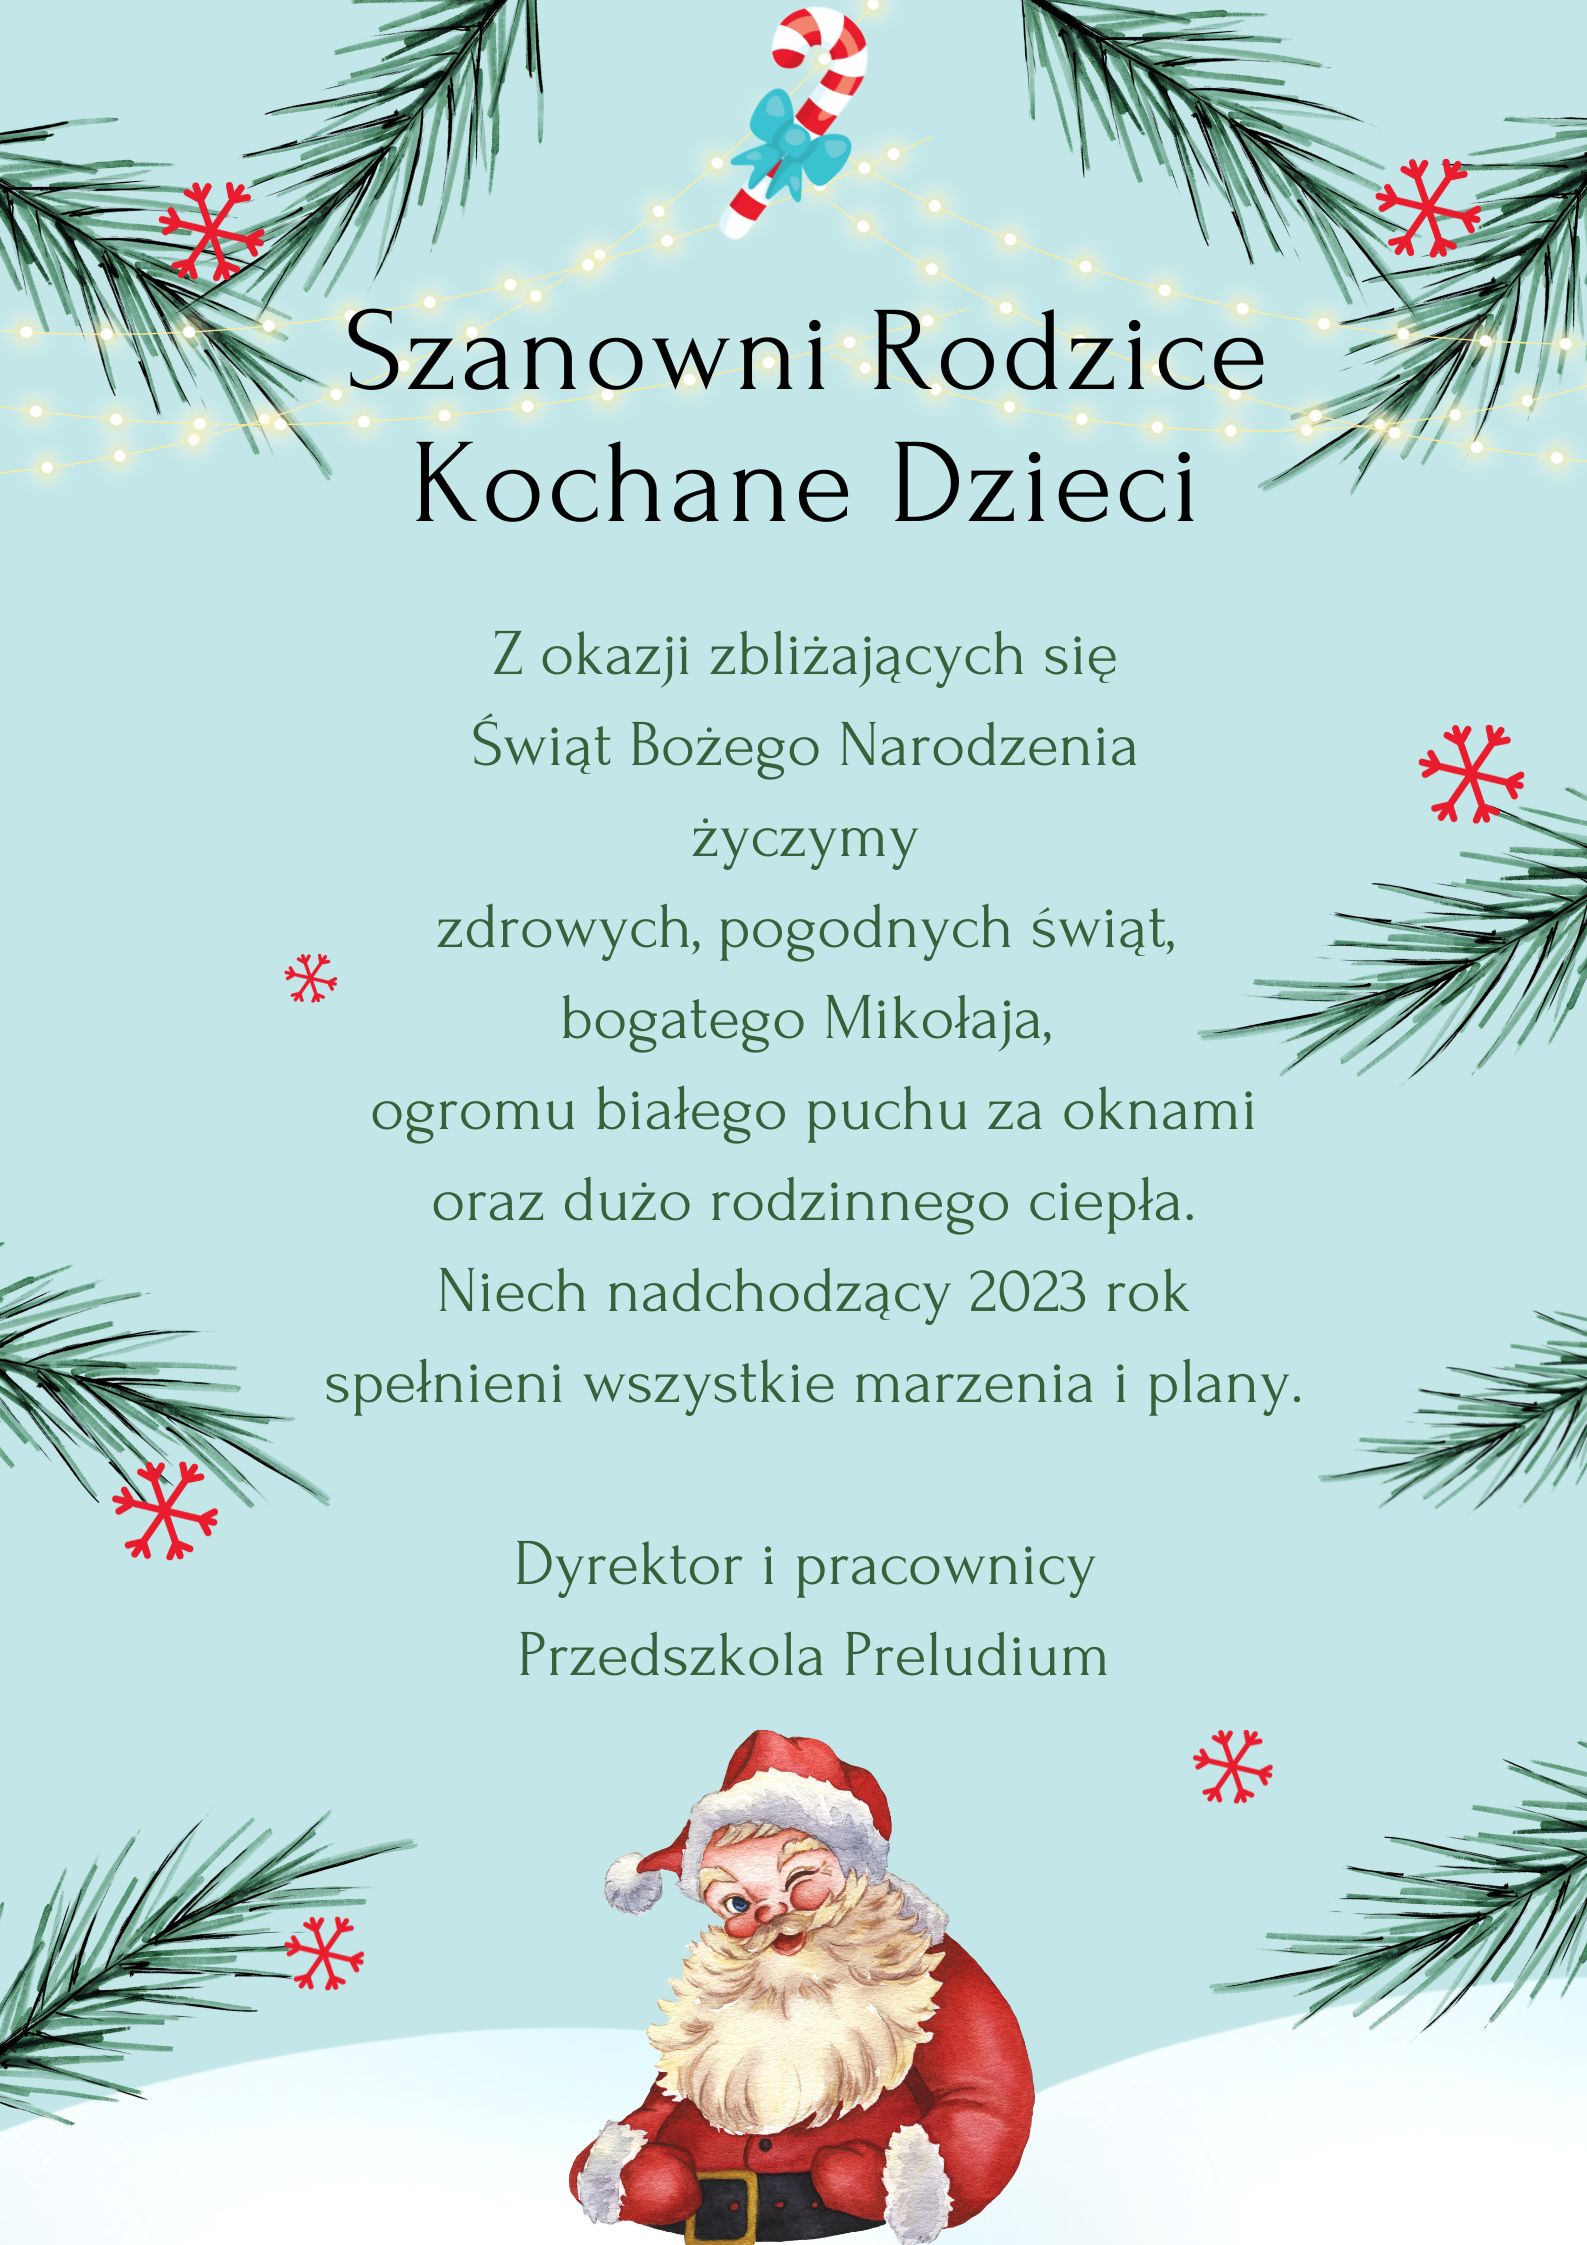 życzenia świąteczno-noworoczne 2022